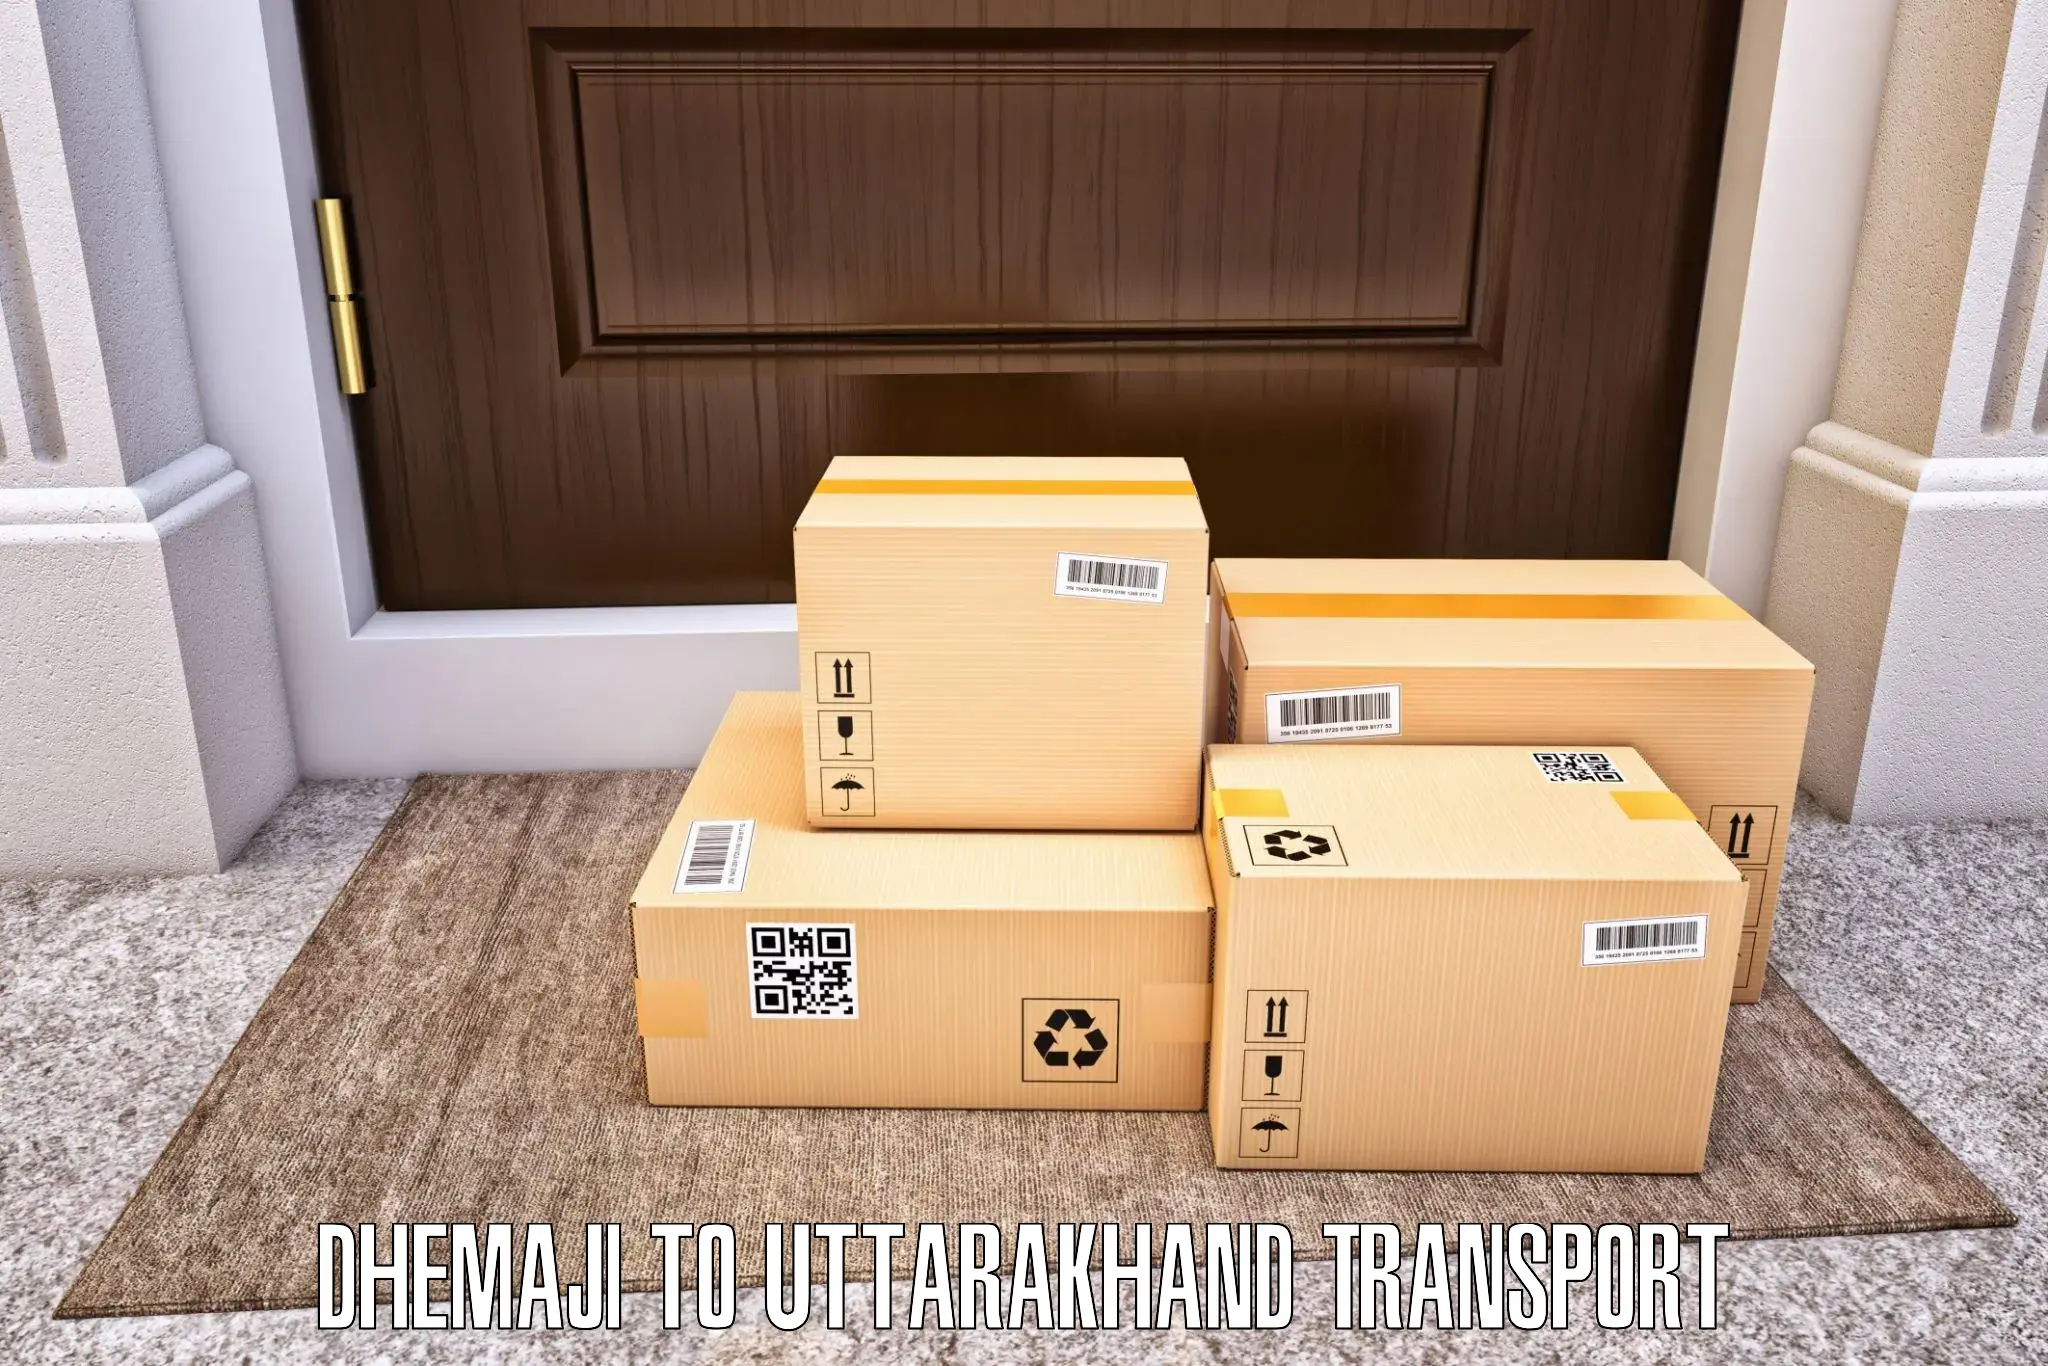 Furniture transport service Dhemaji to Haridwar